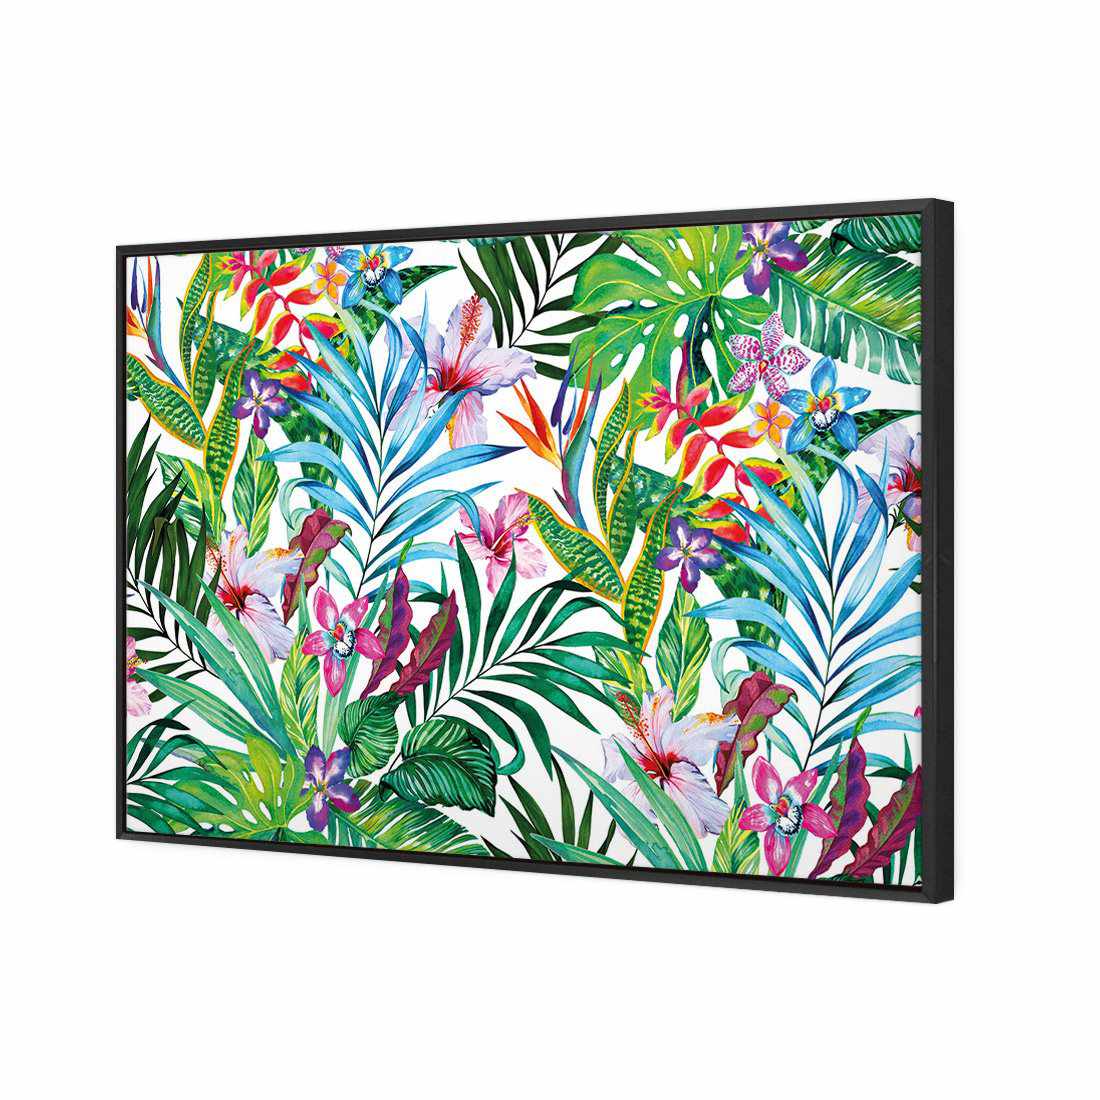 Jungle At Noon Canvas Art-Canvas-Wall Art Designs-45x30cm-Canvas - Black Frame-Wall Art Designs